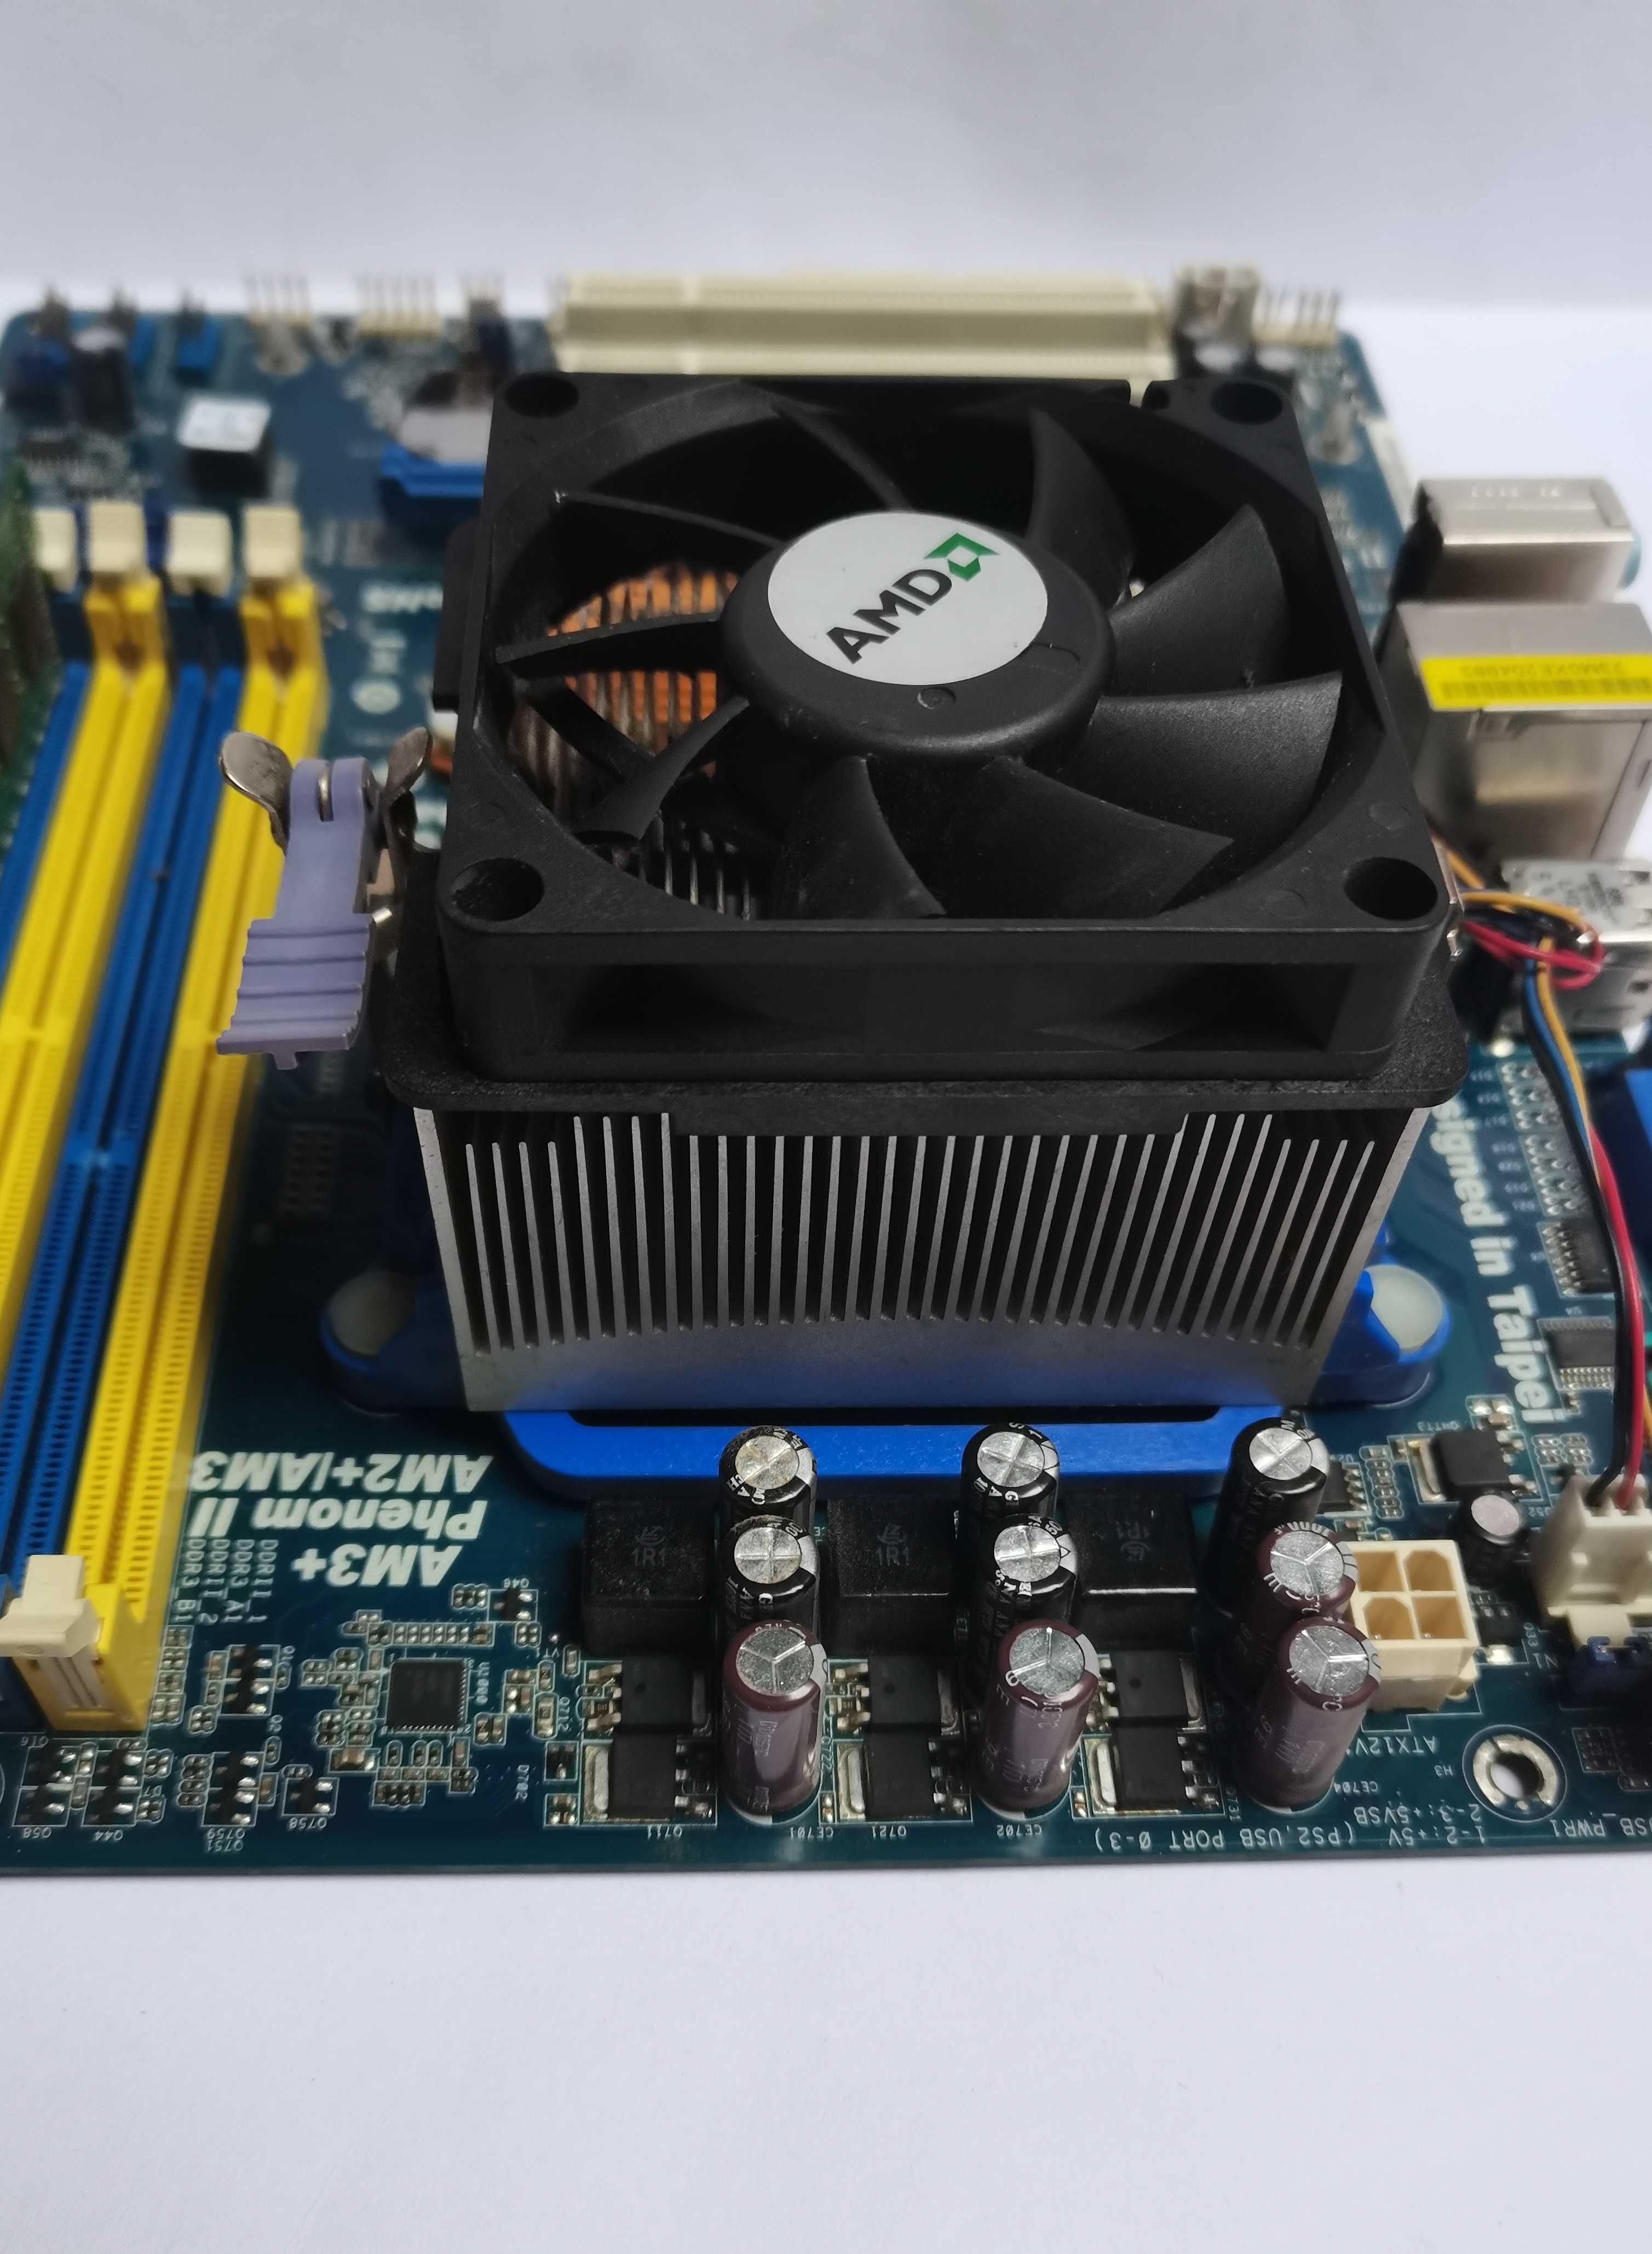 Płyta główna ASRock N68C-GS FX + Procesor AMD Athlon II + 2gb RAM DDR3